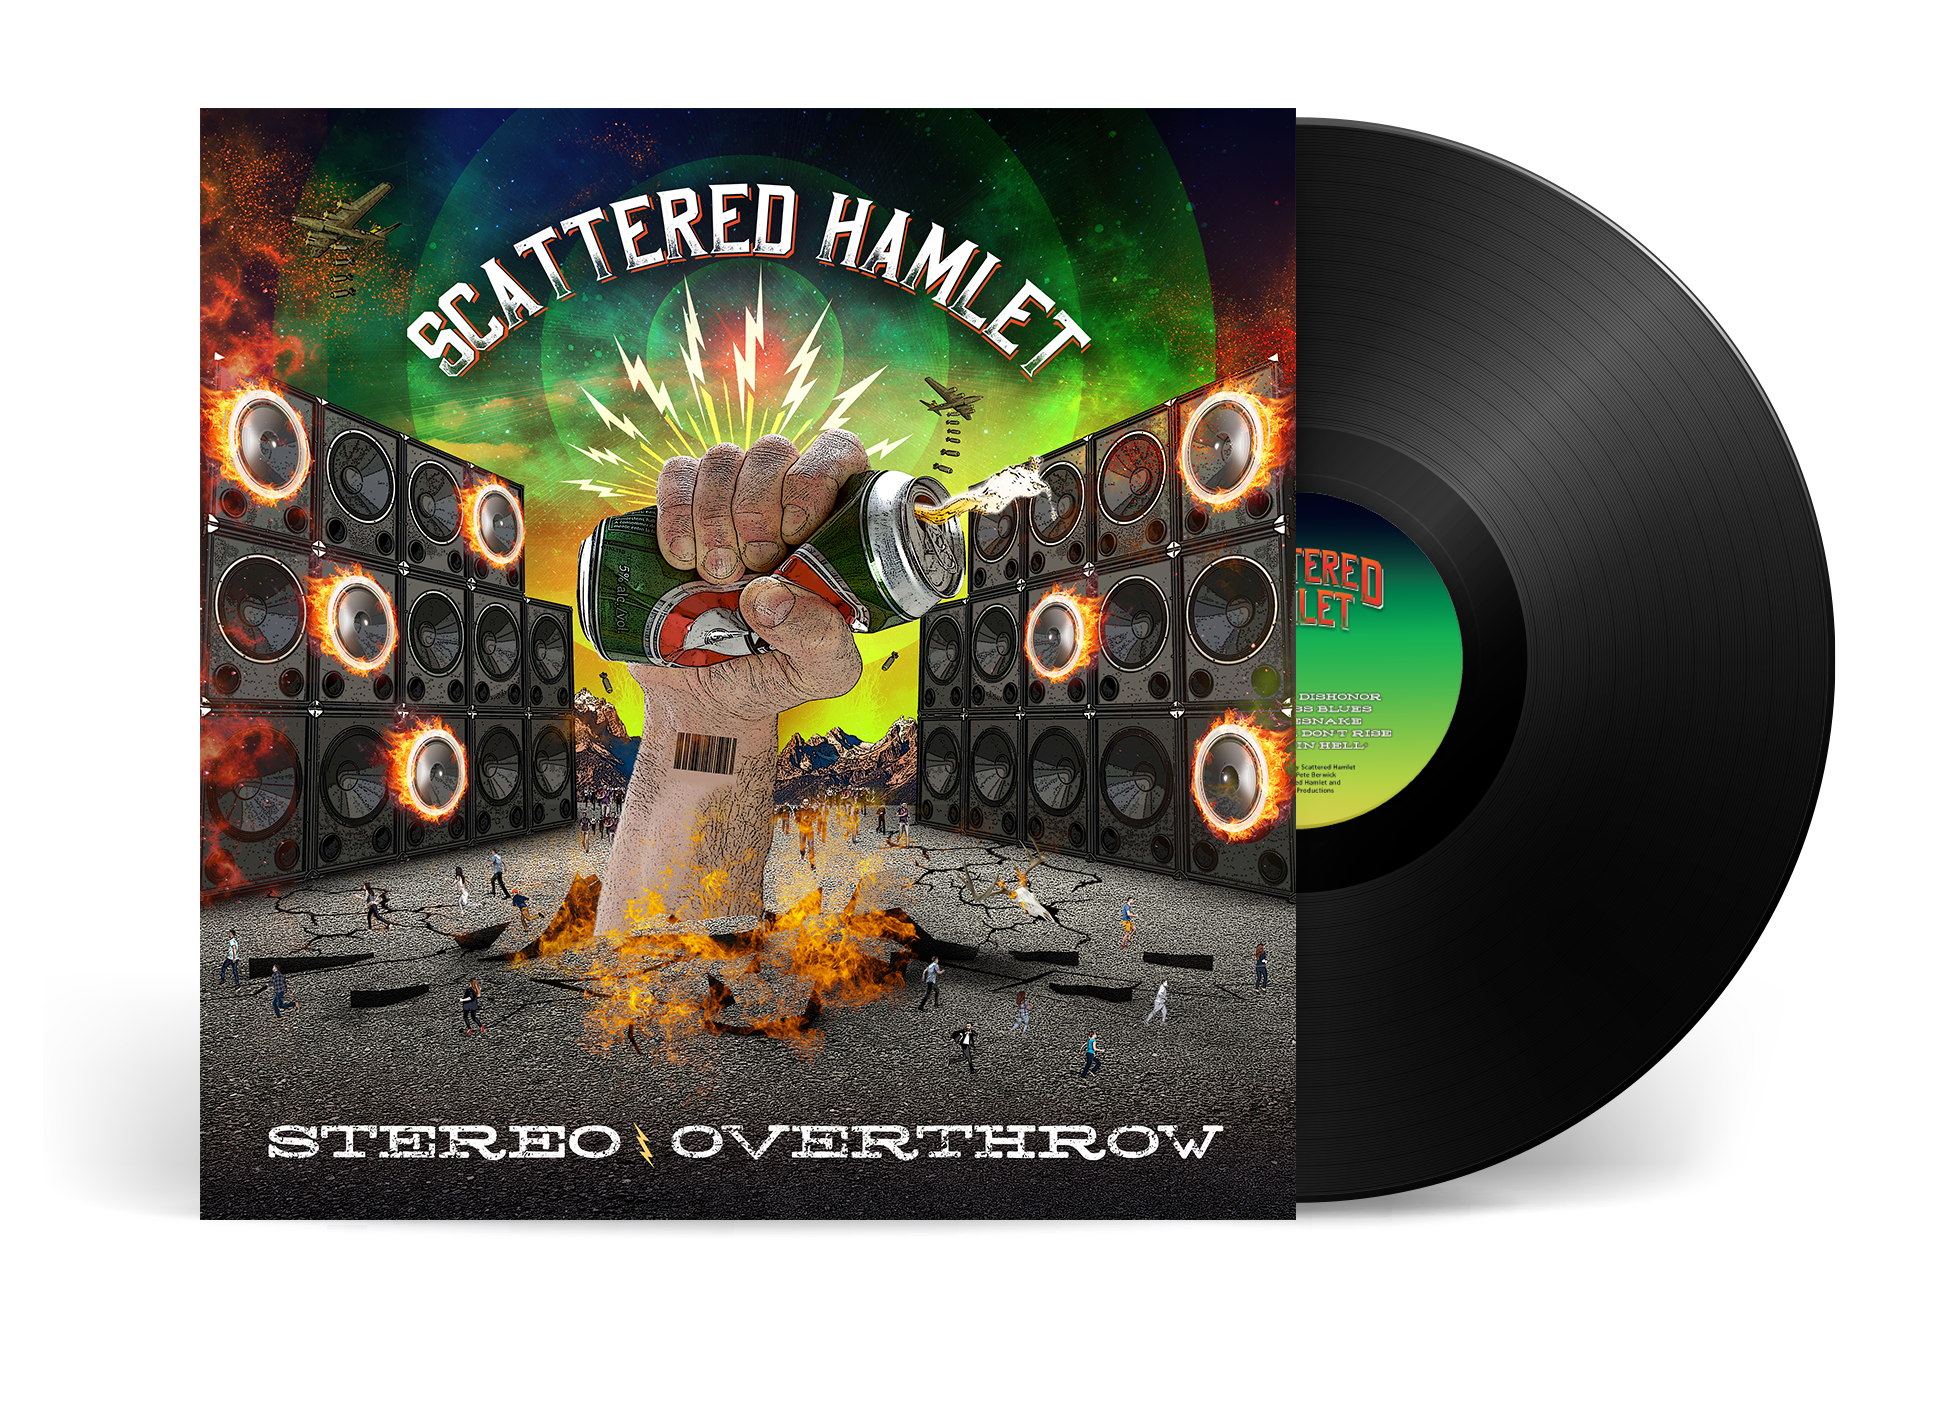 Stereo Overthrow 12" Vinyl Record - Full Length Album (2021)